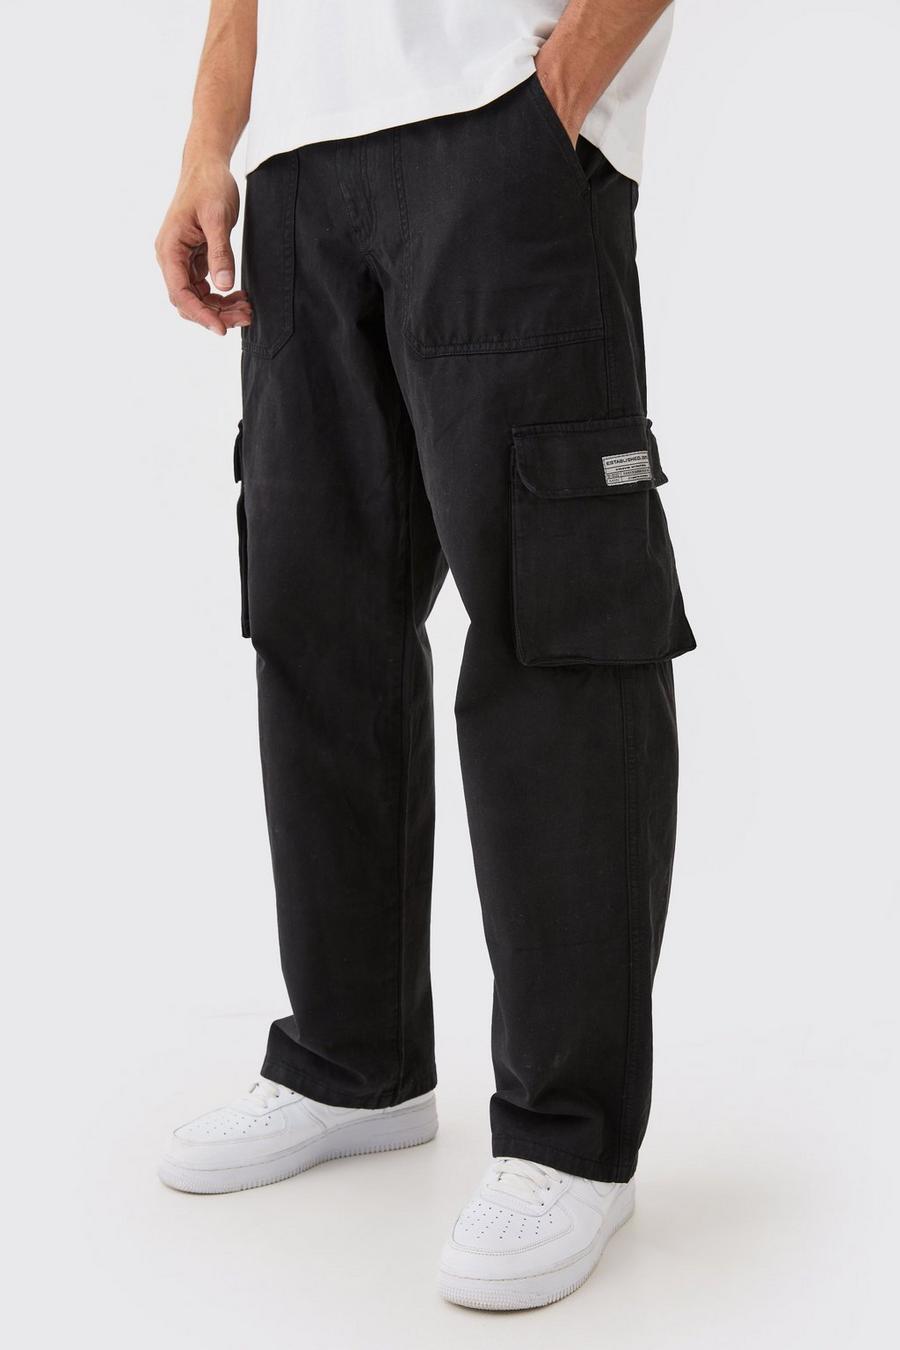 Black Cargo Pants For Men Men's Mid-waist Zip Cargo Pants Relaxed